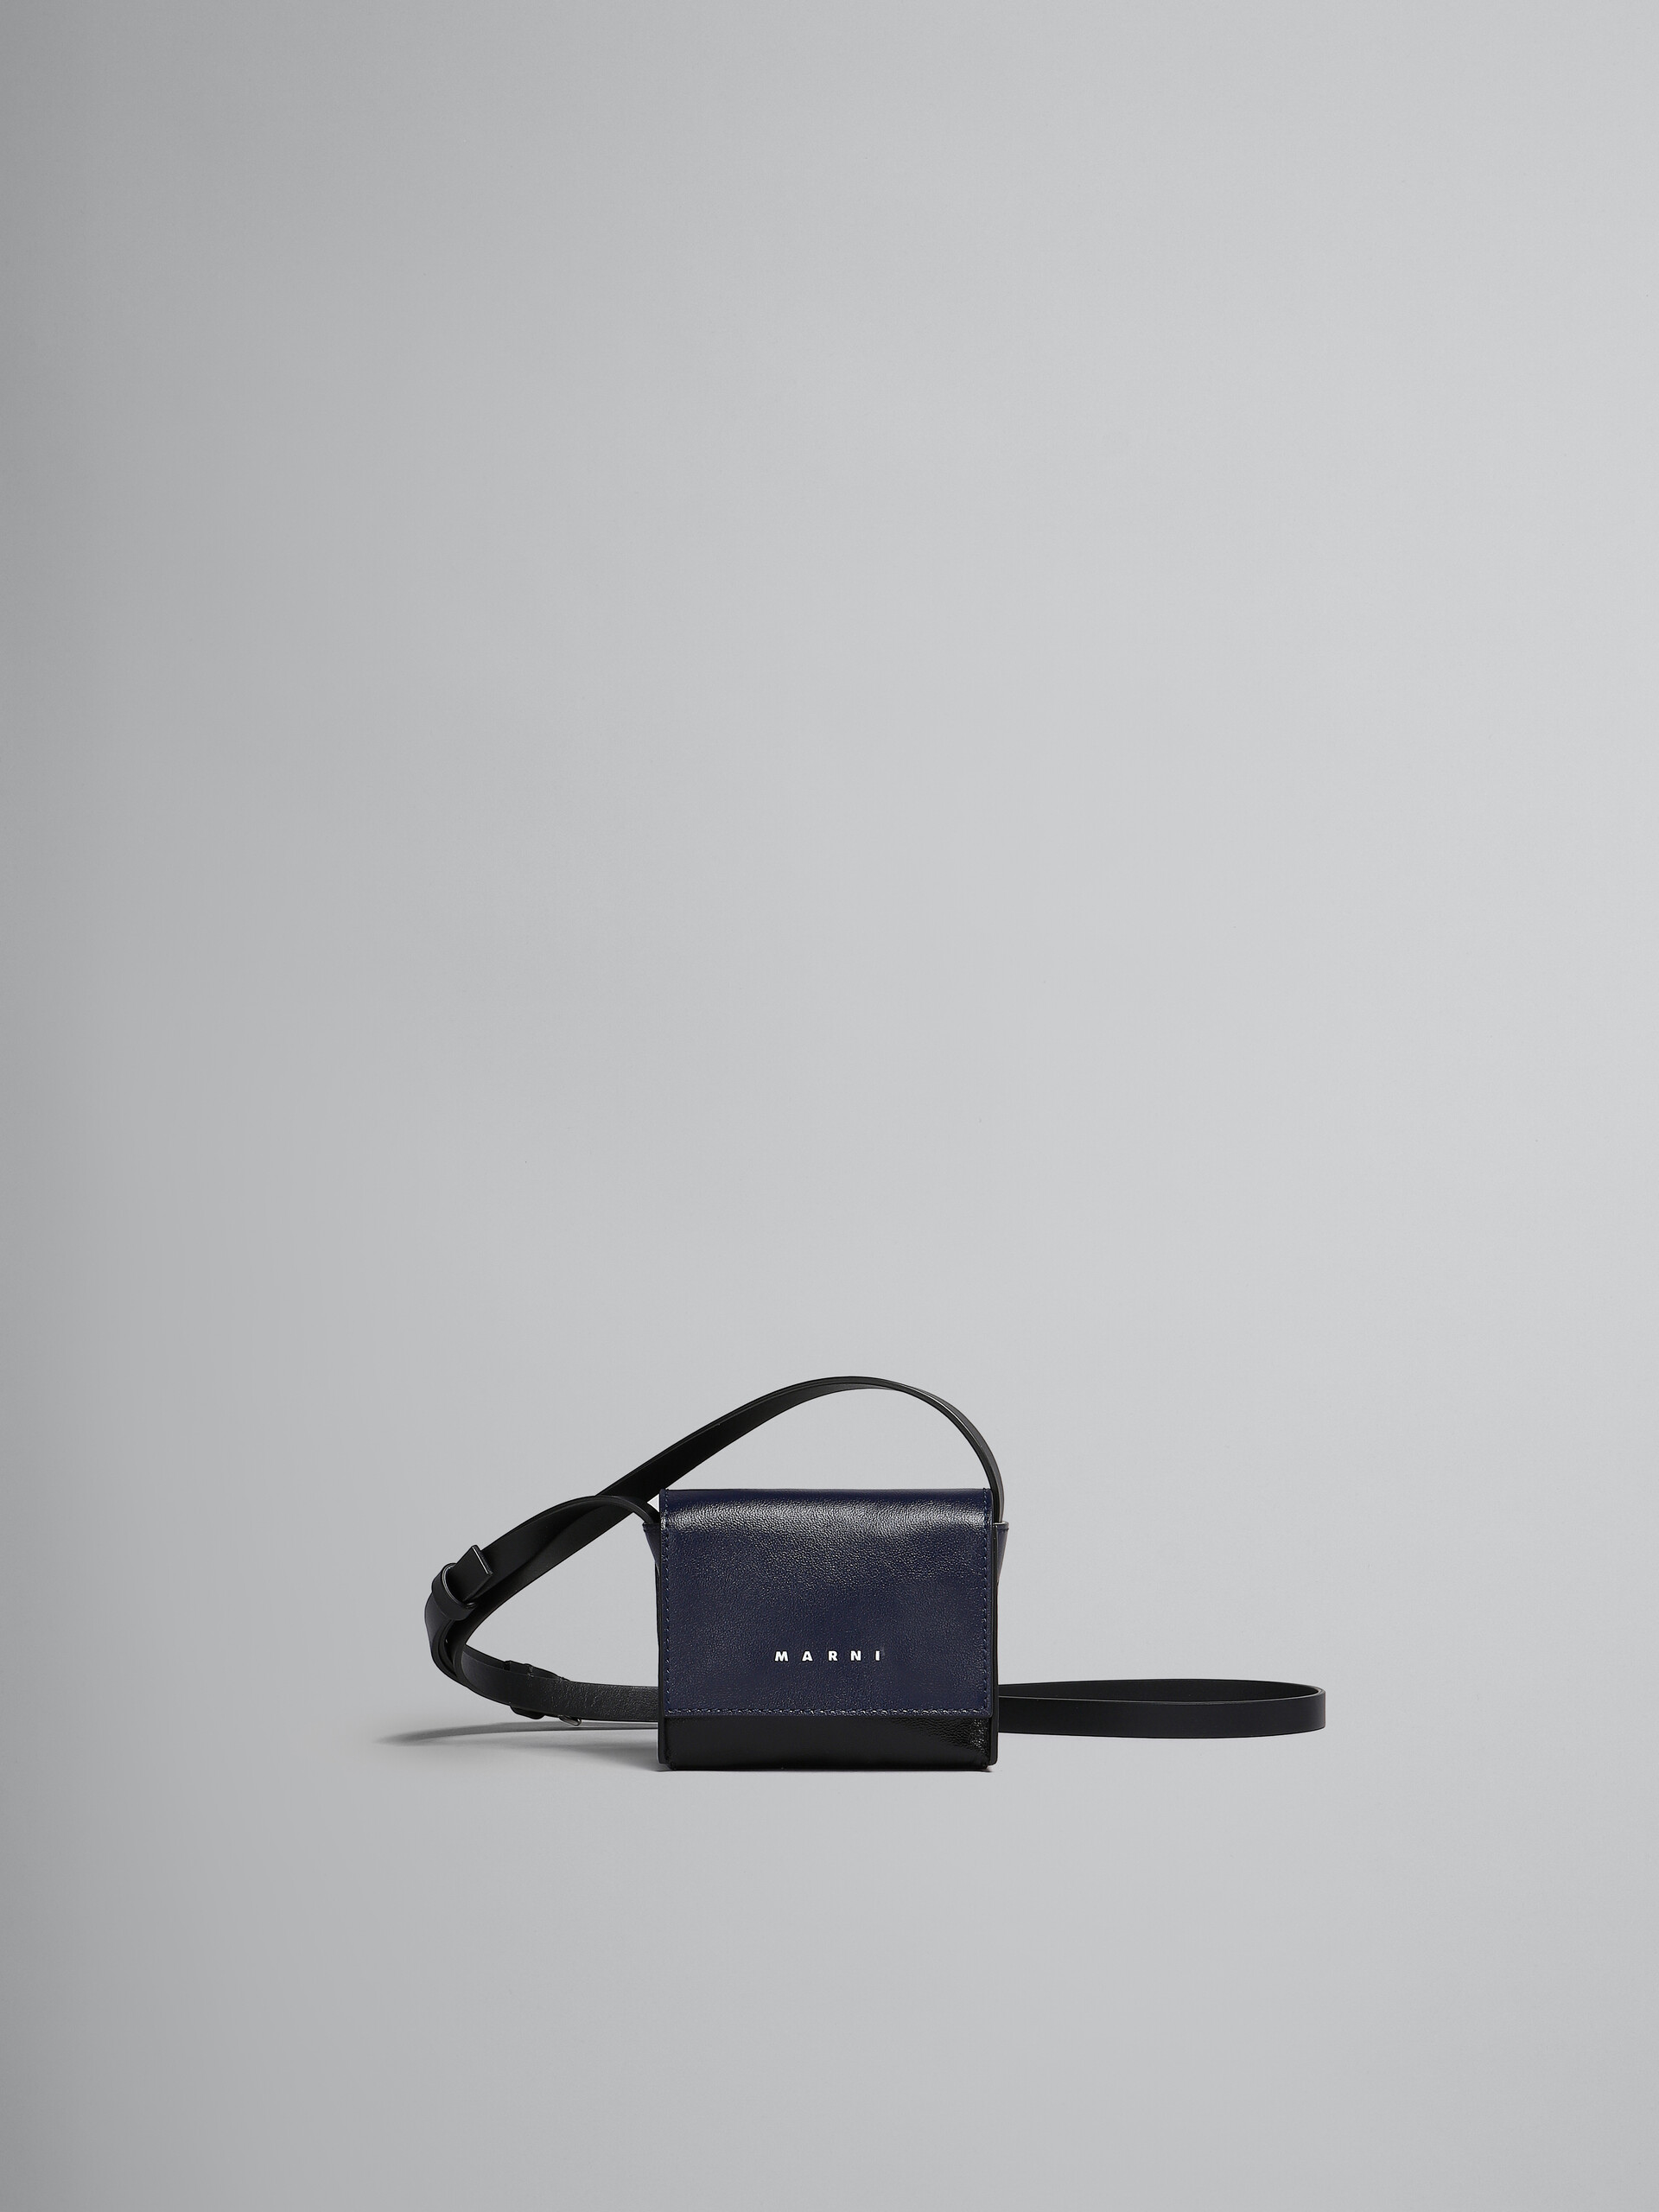 Blue and black leather crossbody bag - Shoulder Bag - Image 1